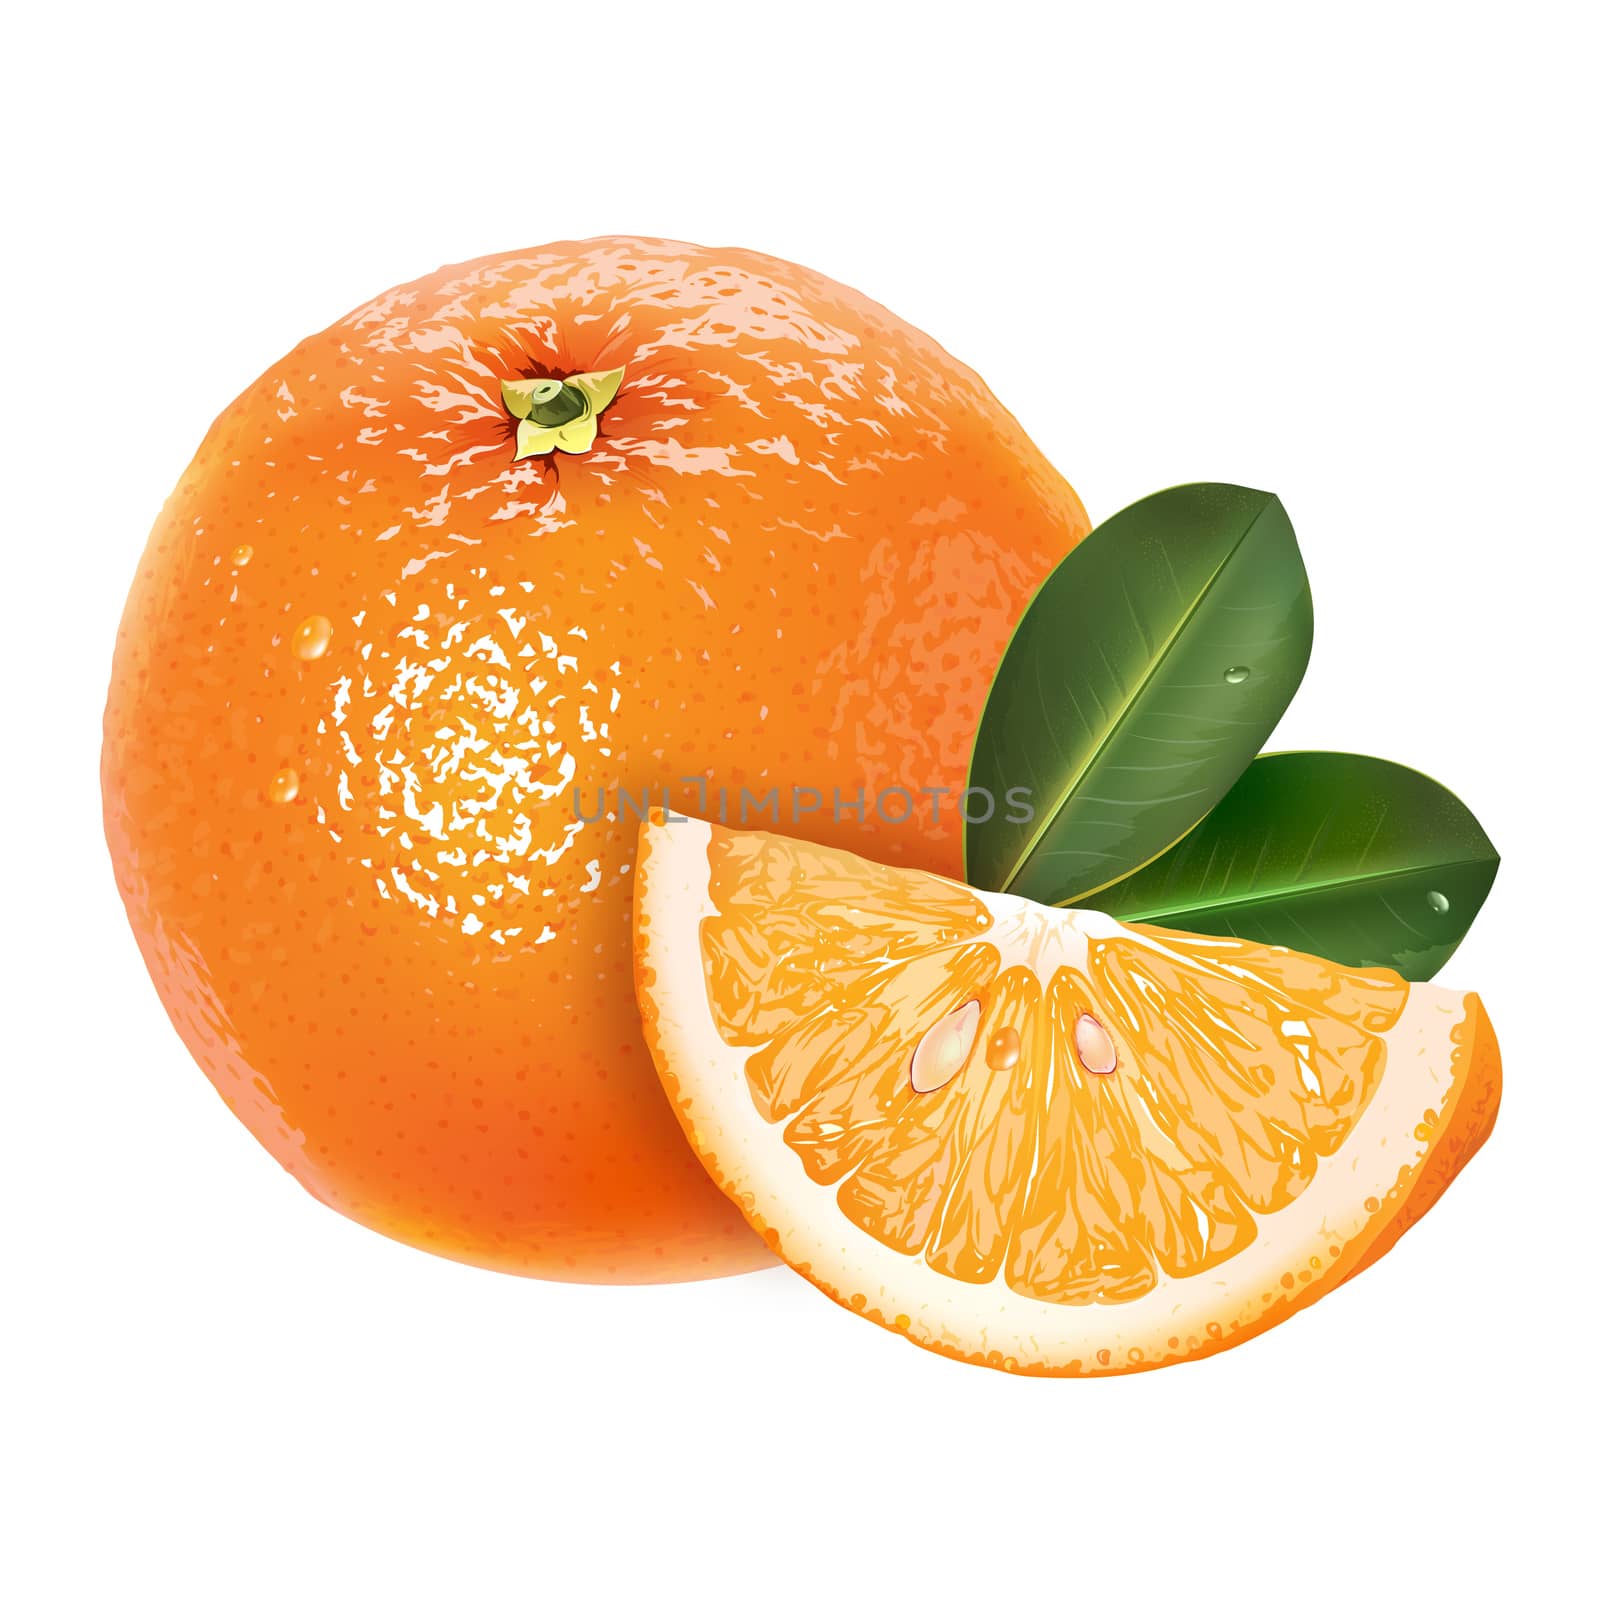 Orange with leaves. Isolated illustration on white background.